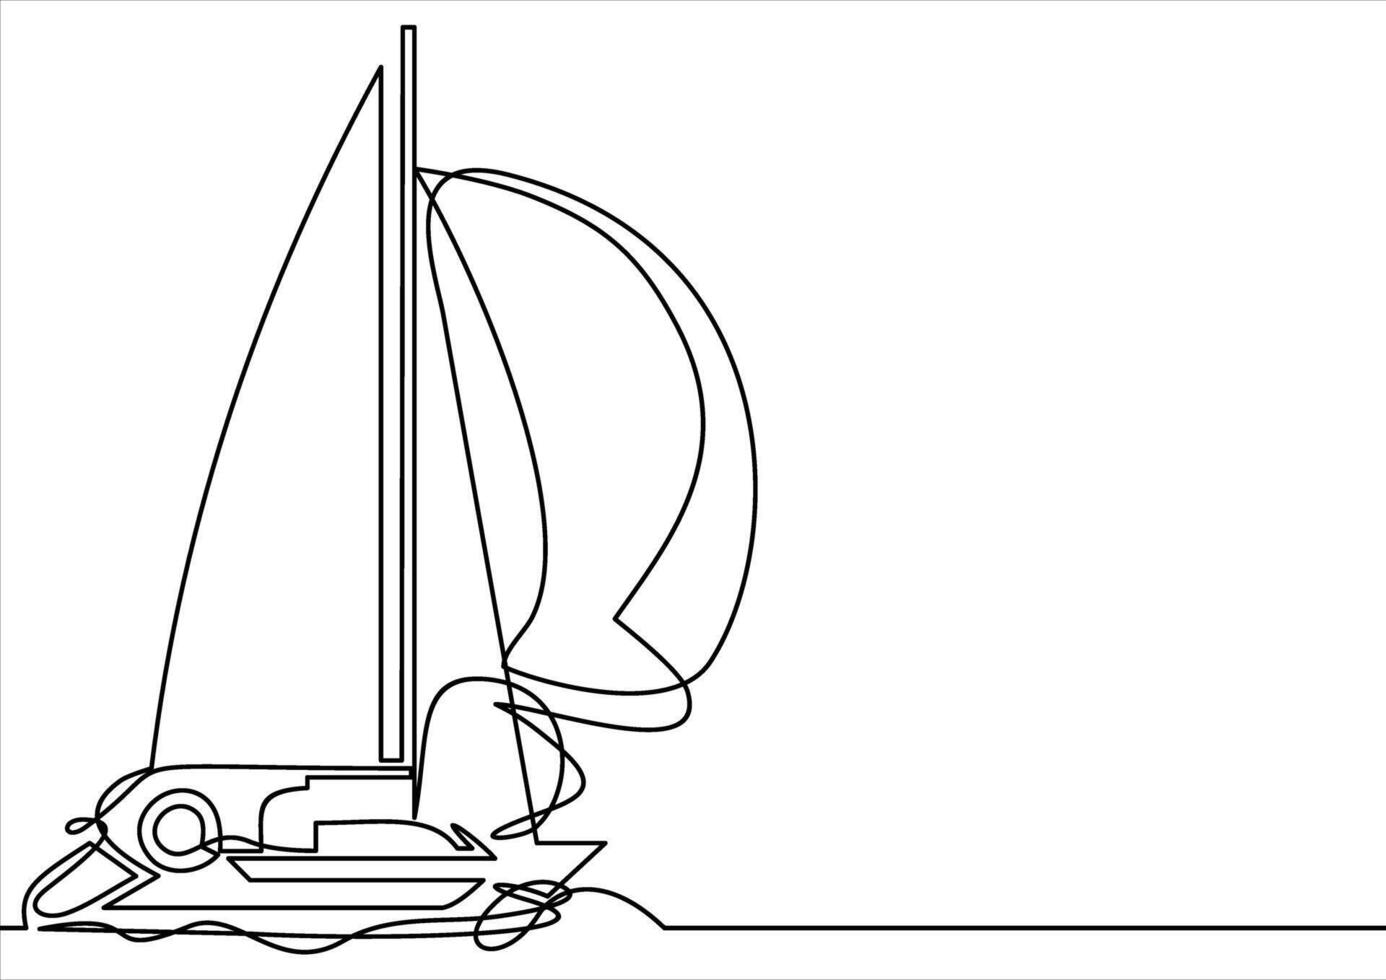 kontinuierlich Linie Zeichnung von Segelboot vektor